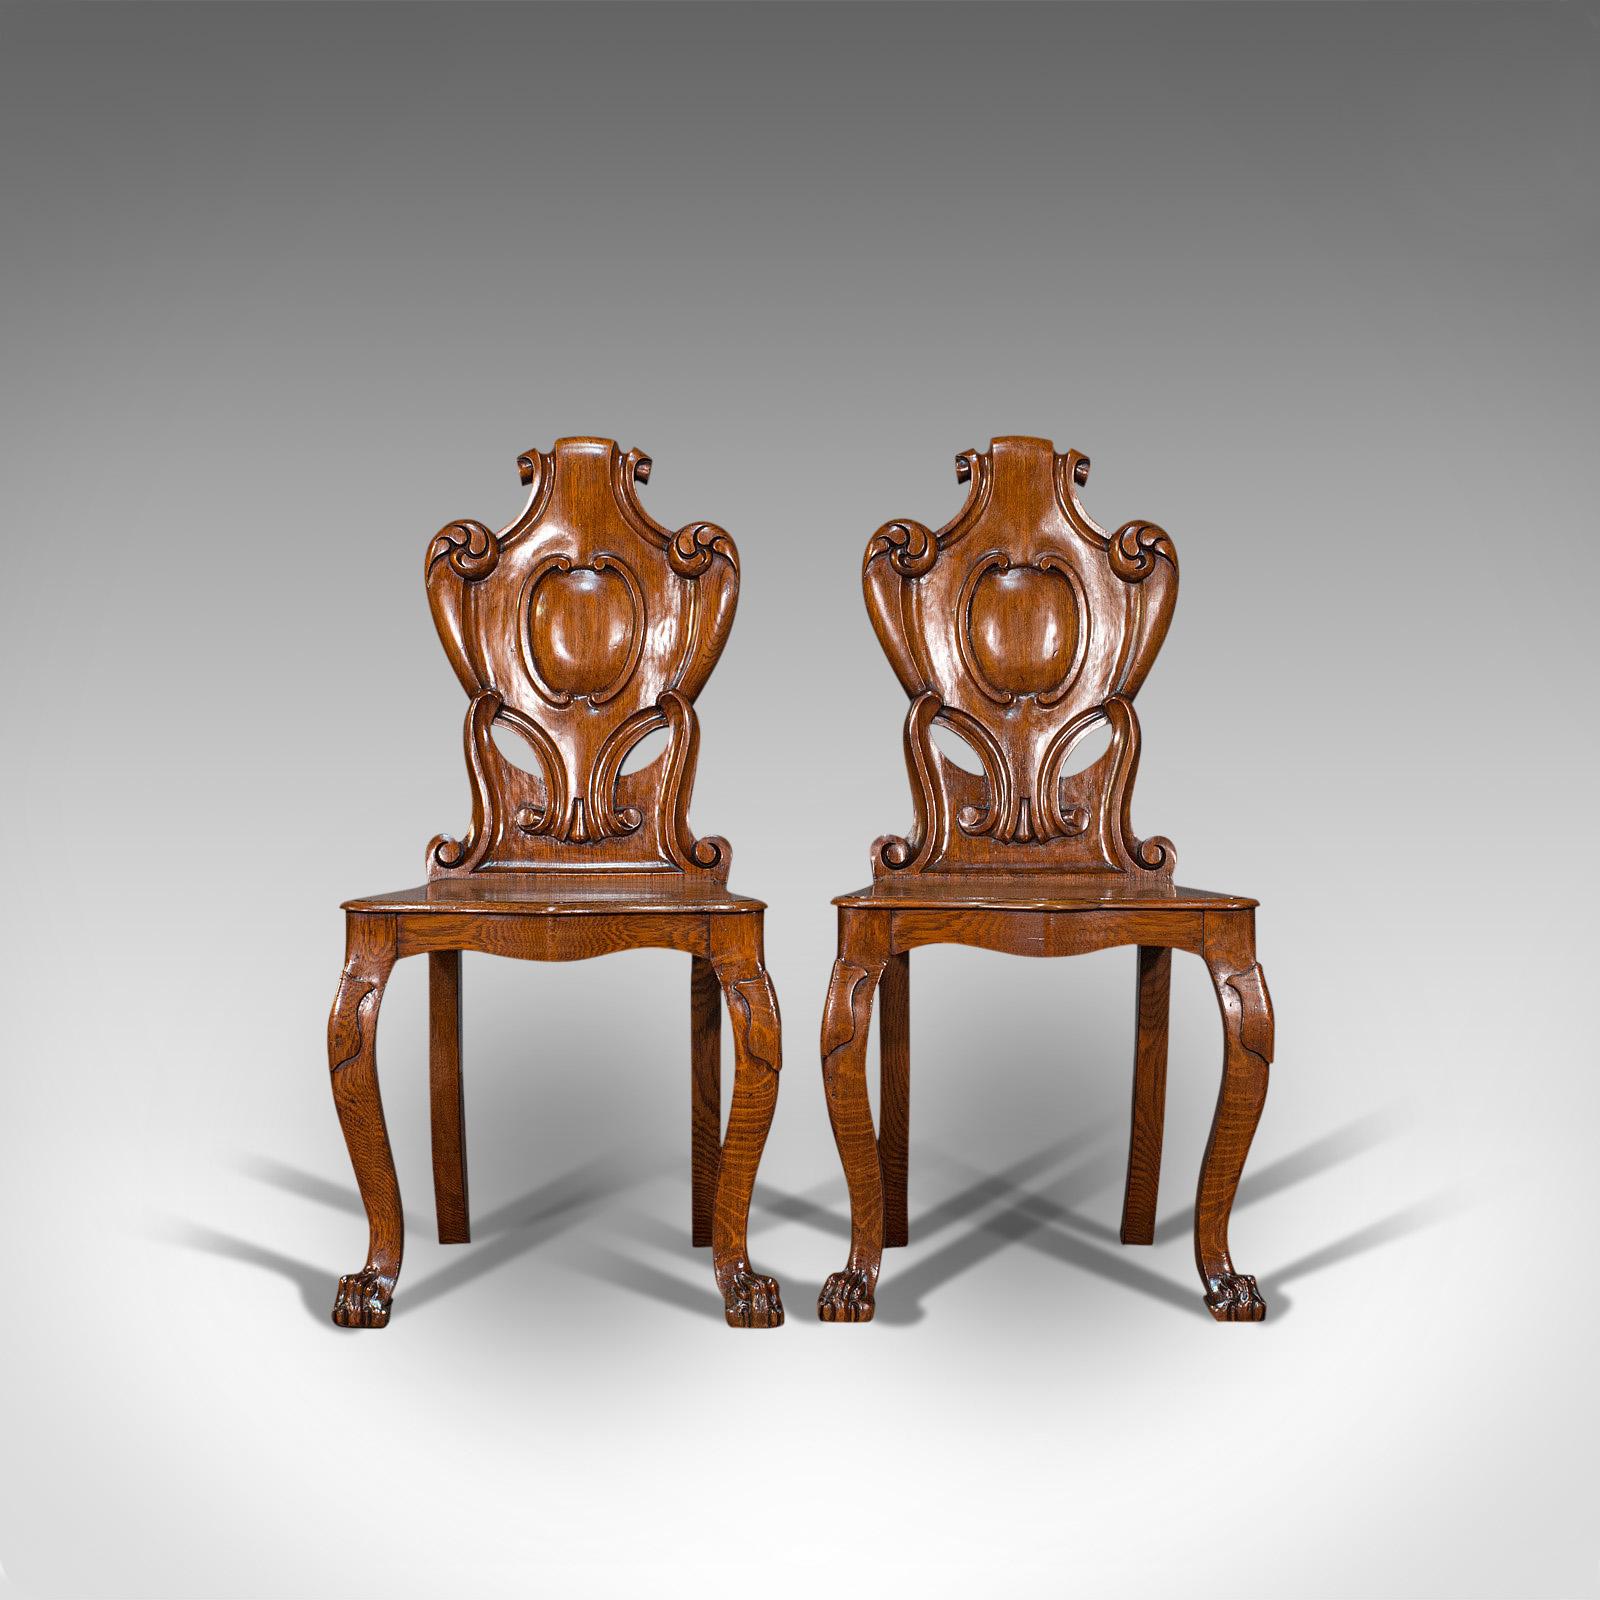 Dies ist ein Paar von antiken Schild zurück Stühle. Ein schottischer Dielenstuhl aus Eiche von hervorragender Qualität aus der viktorianischen Zeit, um 1880.

Prächtige Stühle mit ansprechenden geschnitzten Details
Mit begehrter Alterspatina -